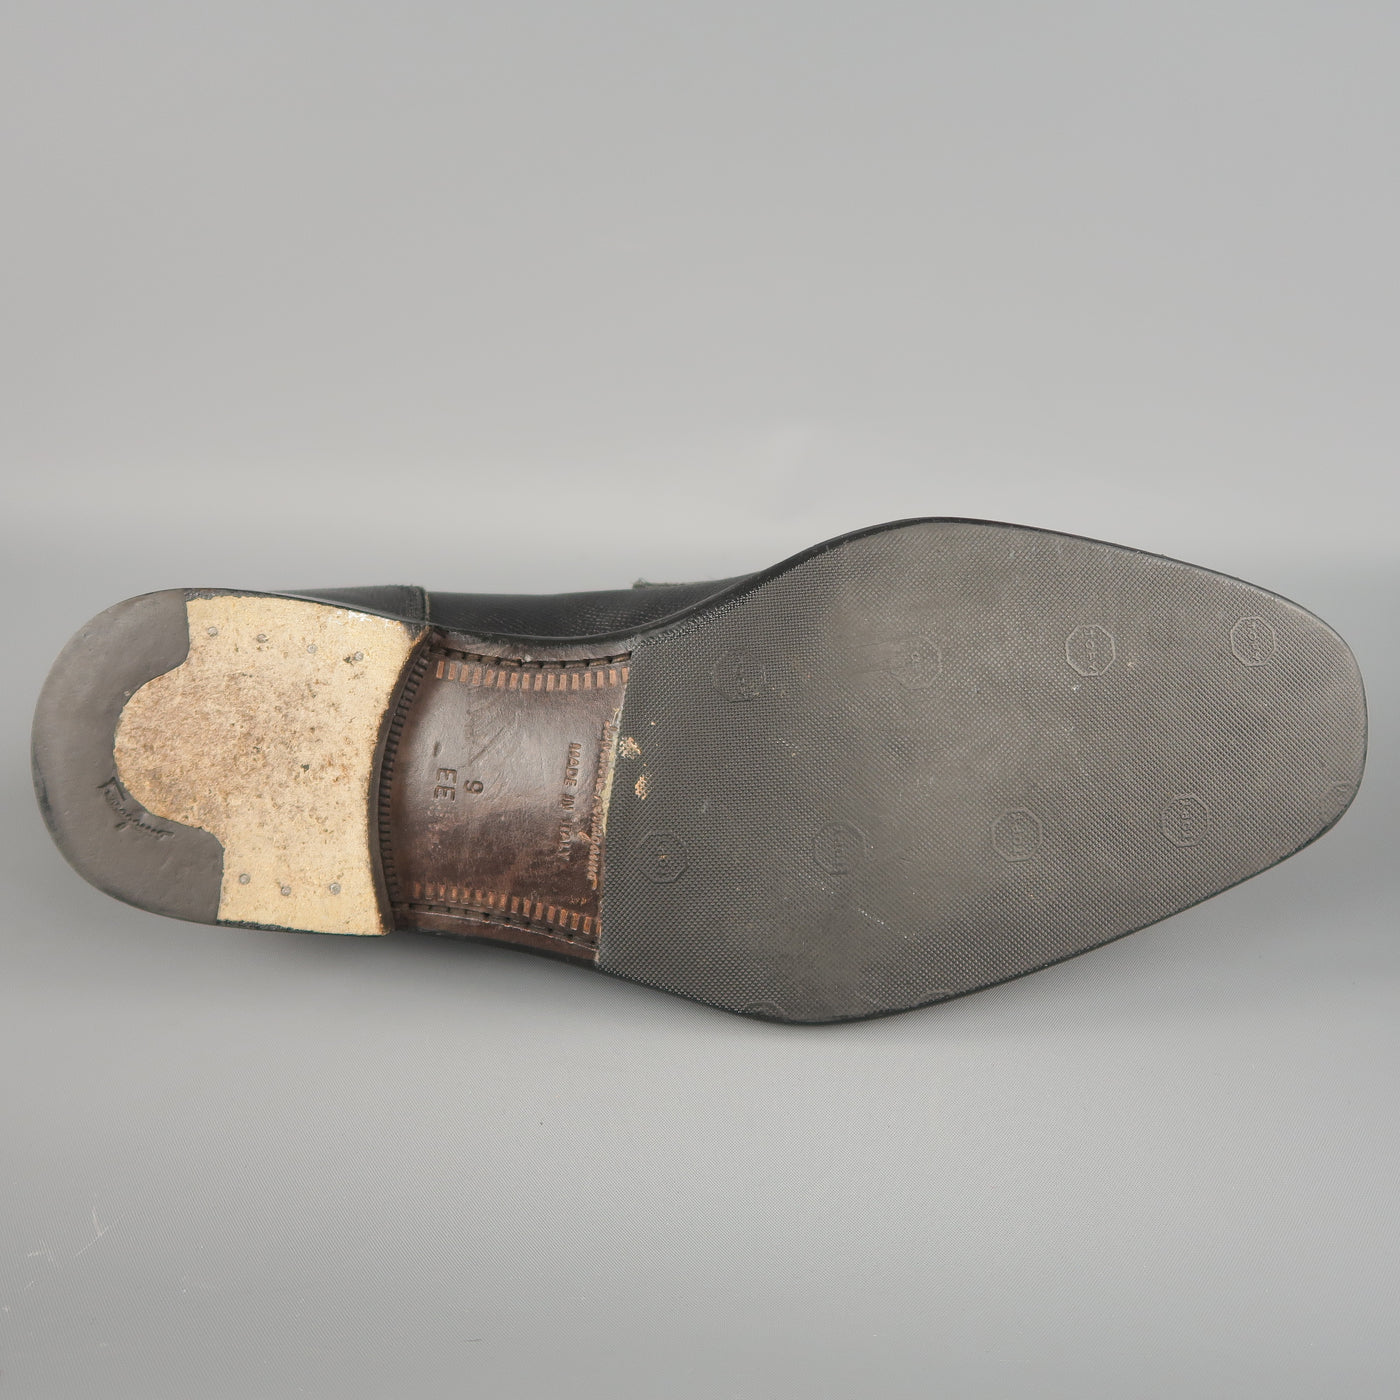 SALVATORE FERRAGAMO Size 10 Black Solid Leather Loafers